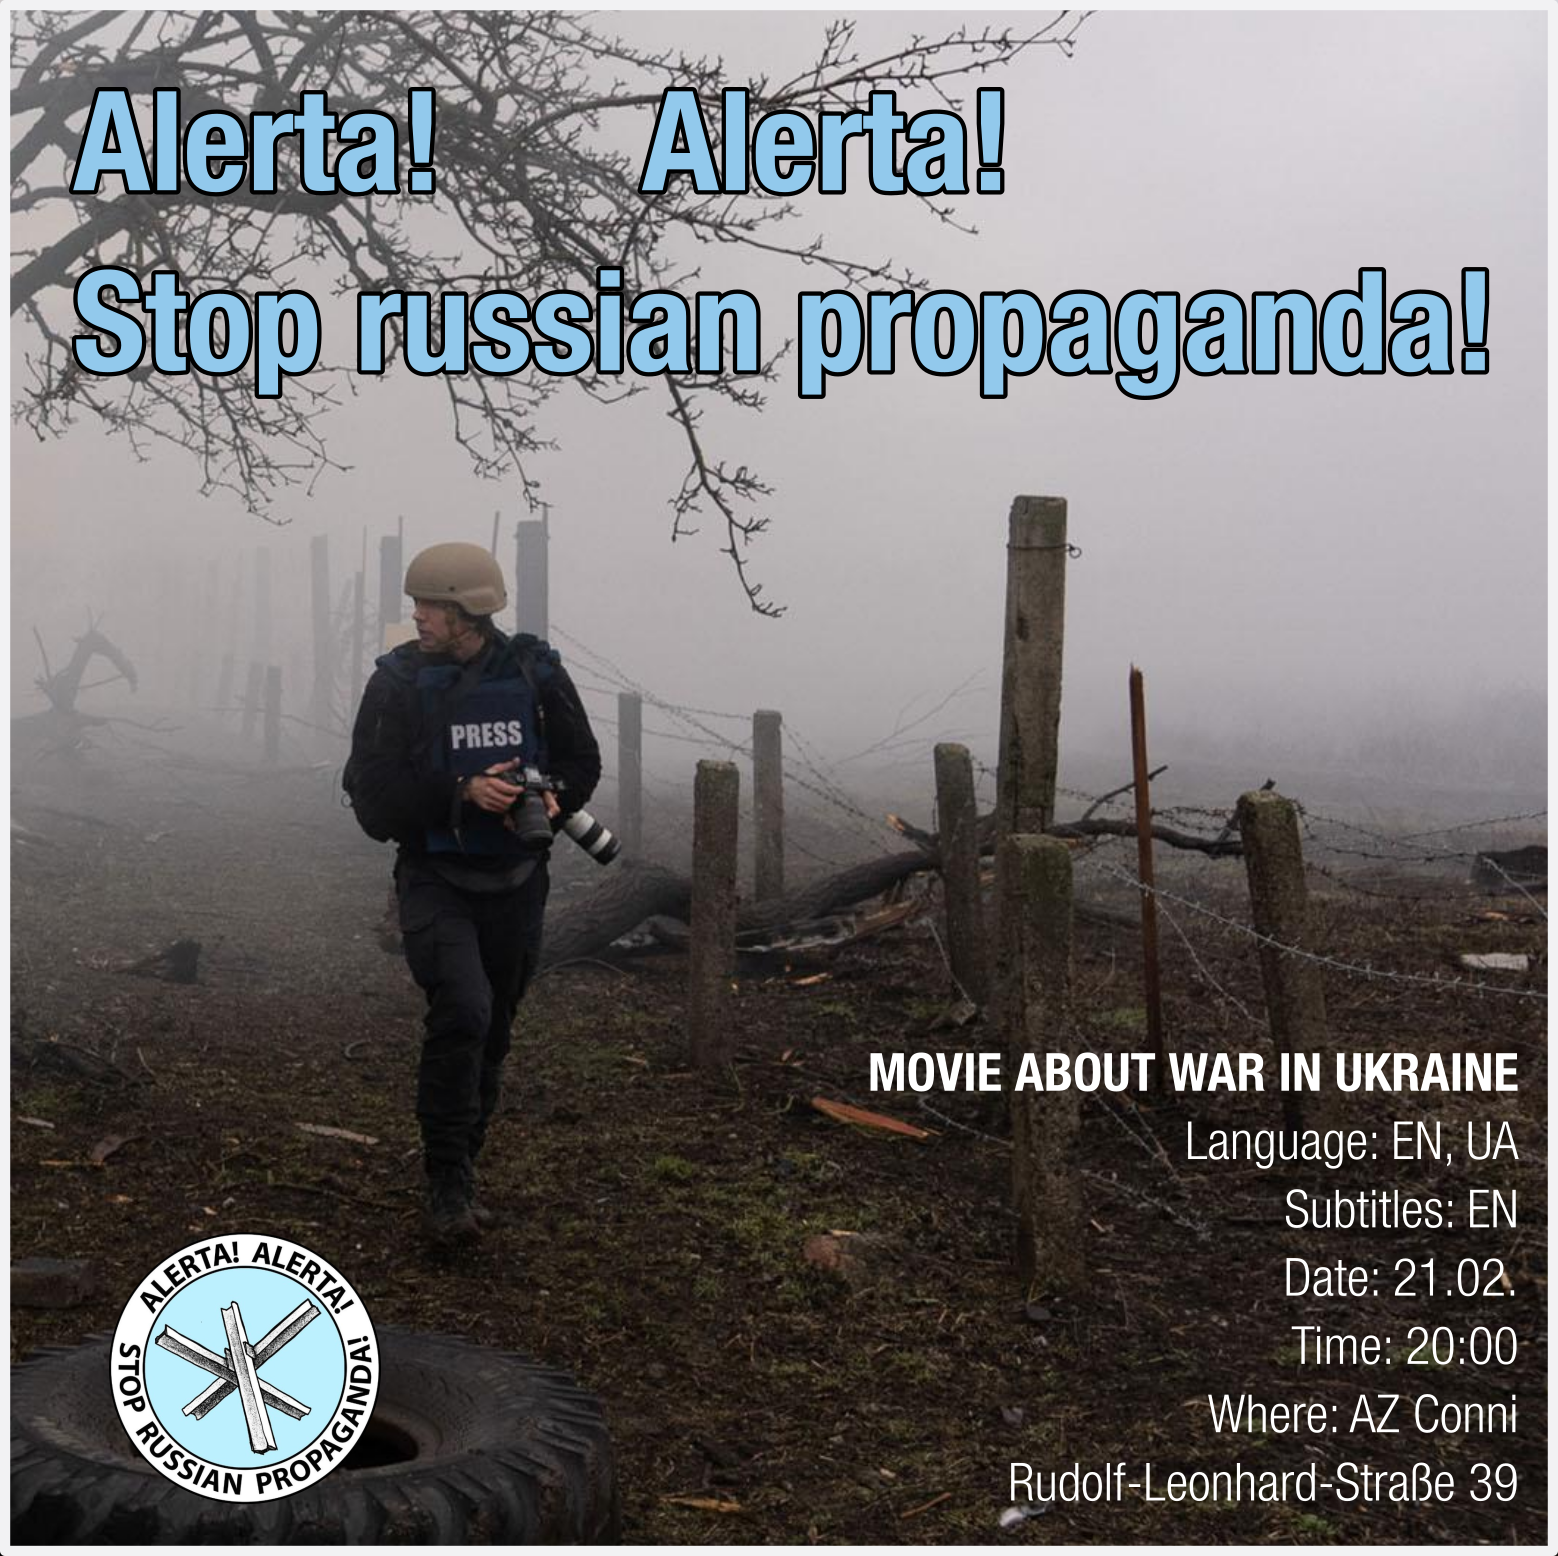 21.02. – Dokumentarfilm über den Krieg in der Ukraine